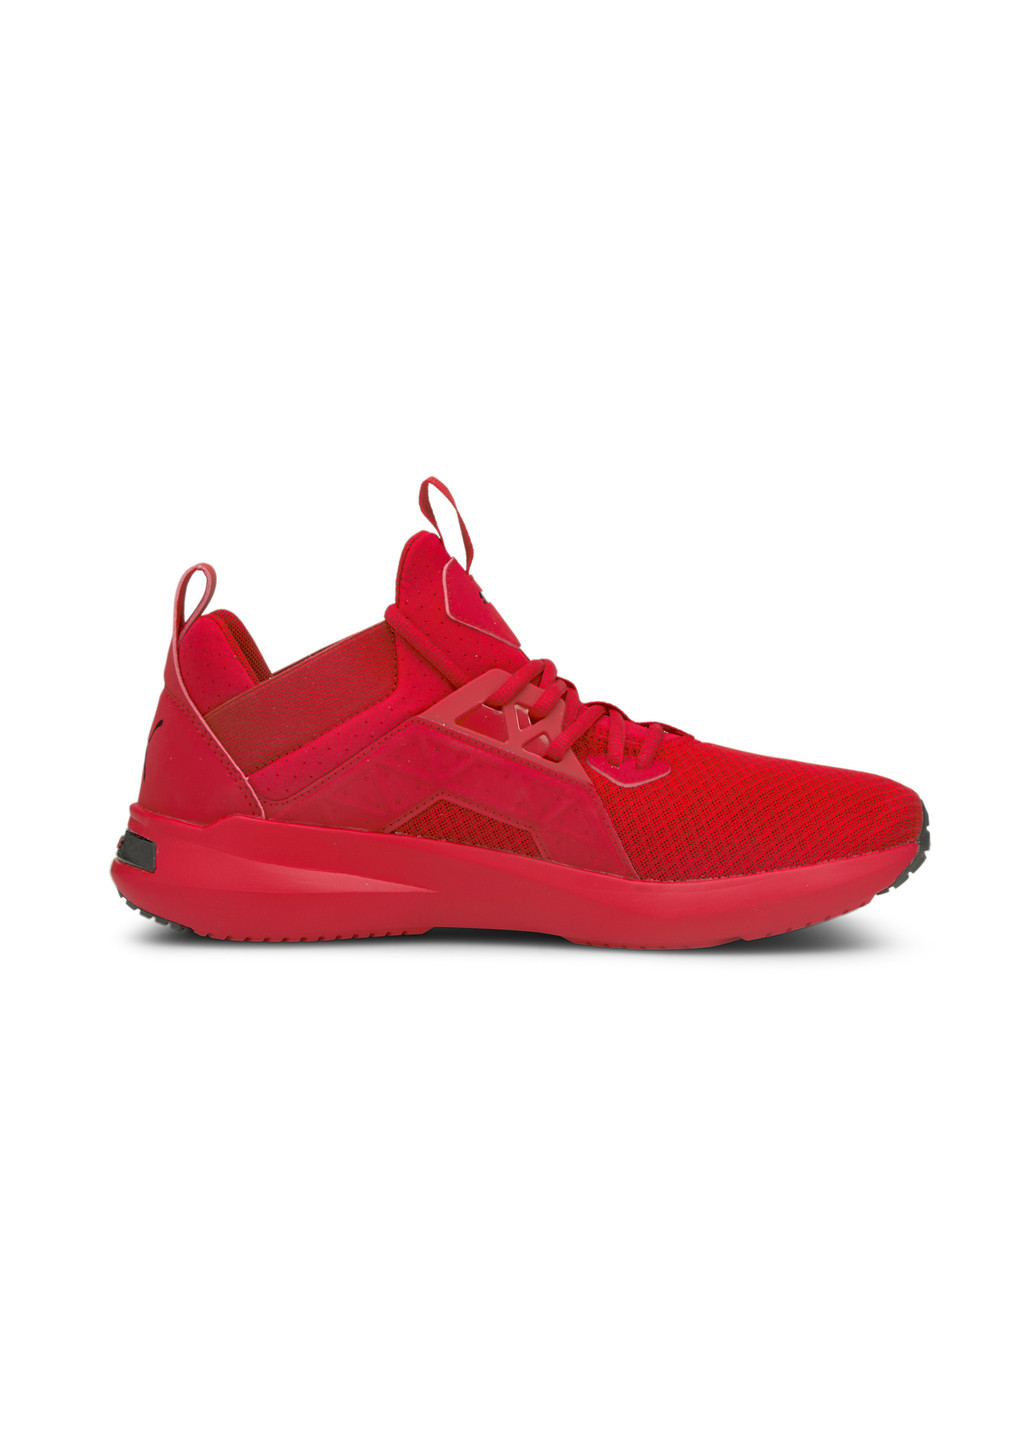 Красные всесезонные кроссовки softride enzo nxt men's running shoes Puma